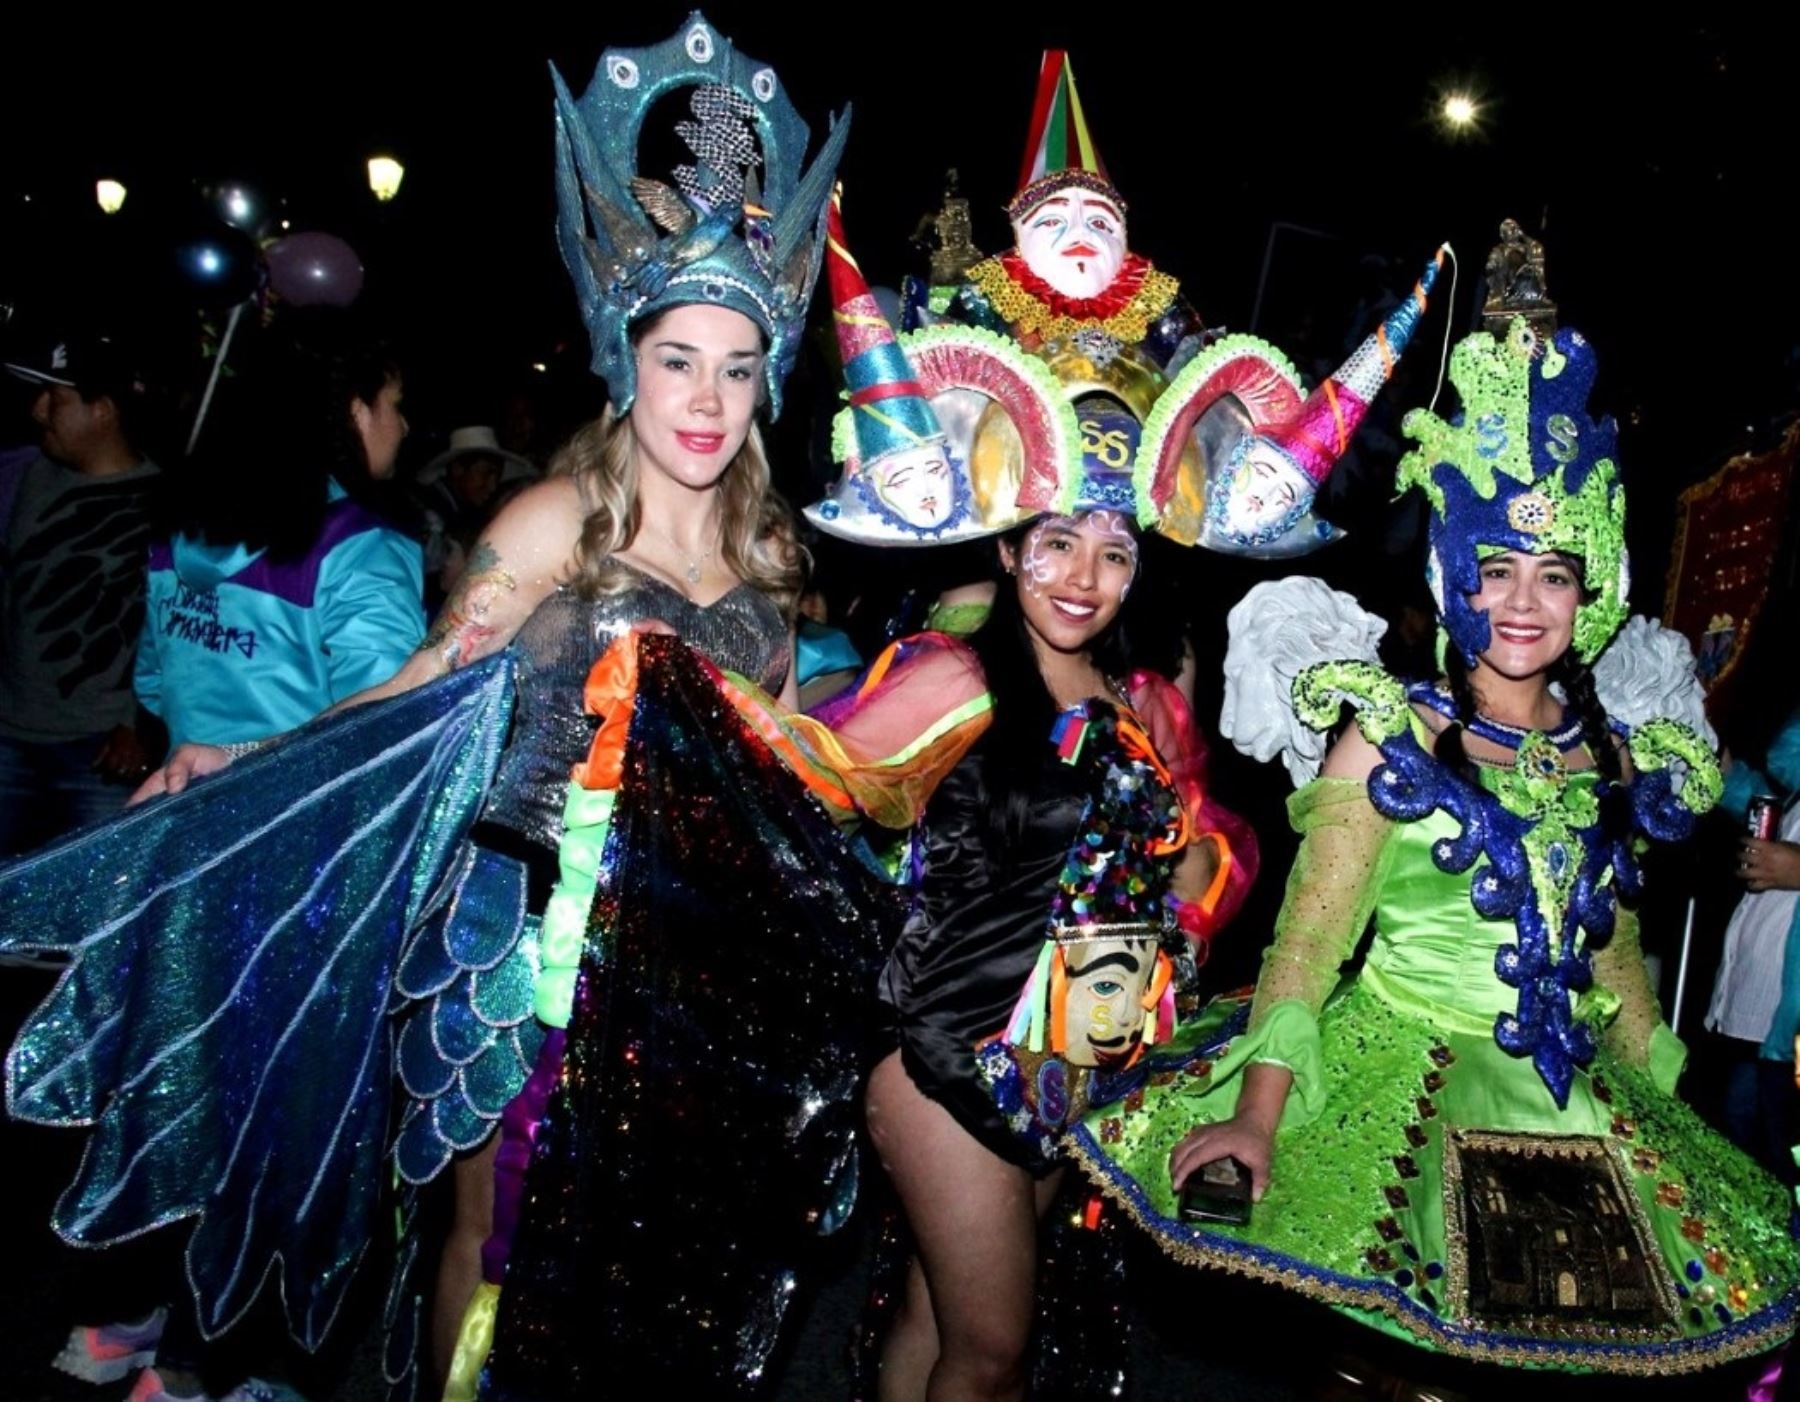 Con corso nocturno Cajamarca inició el fin de semana el inicio de actividades de su tradicional carnaval y espera el arribo de miles de turistas. Foto: Eduard Lozano